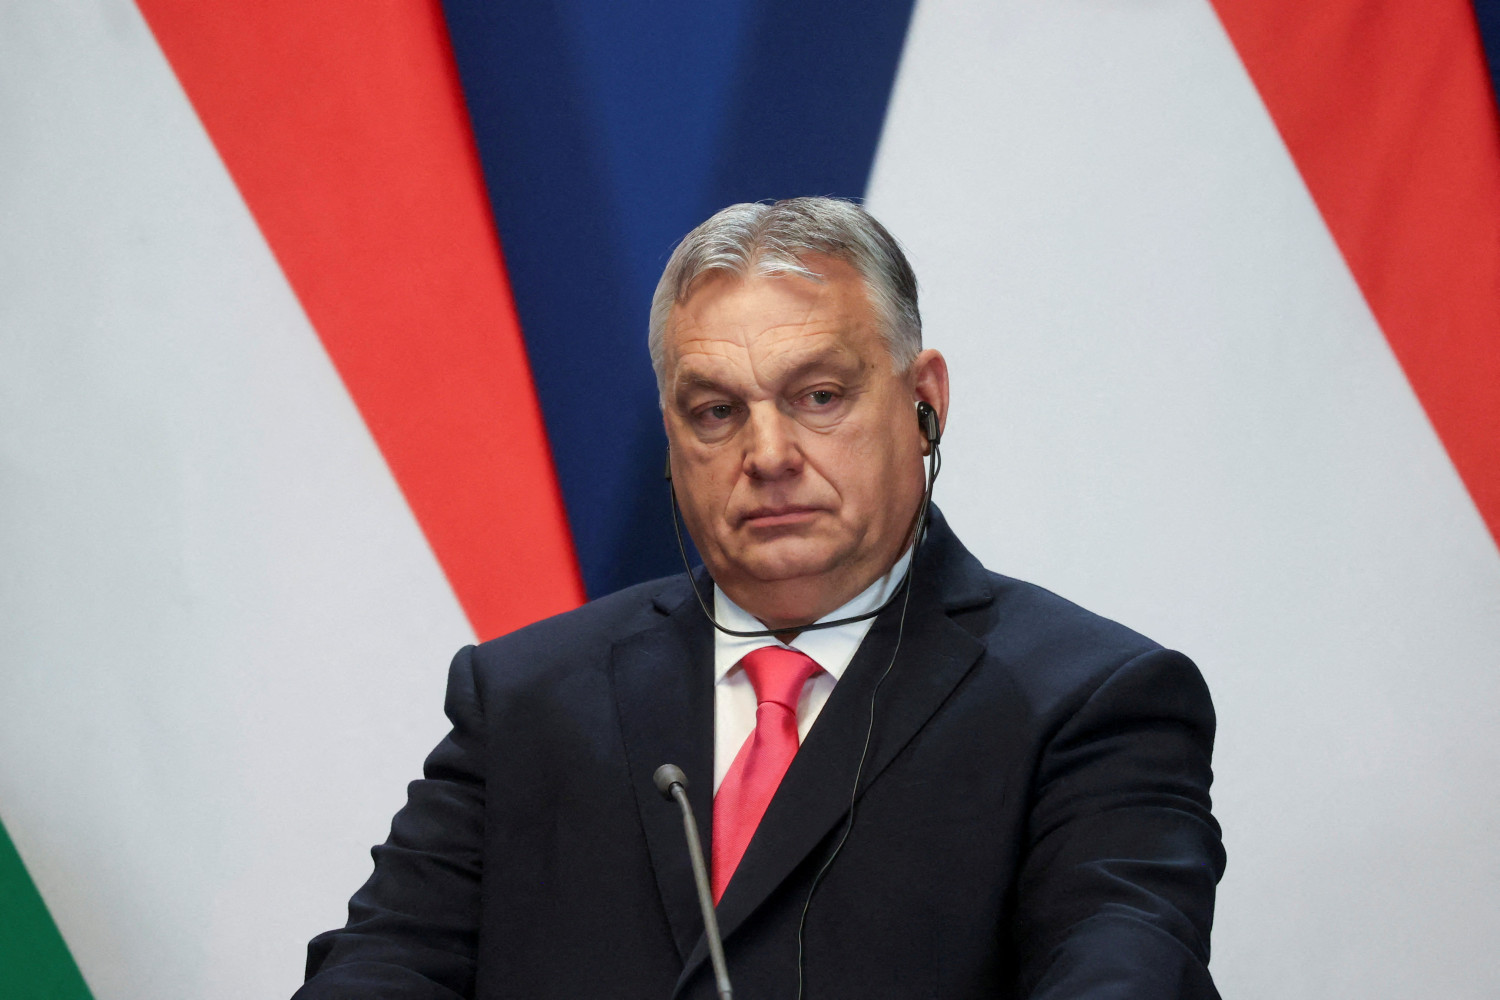 El auge de la extrema derecha en las elecciones y Orbán influirán en las políticas de la UE